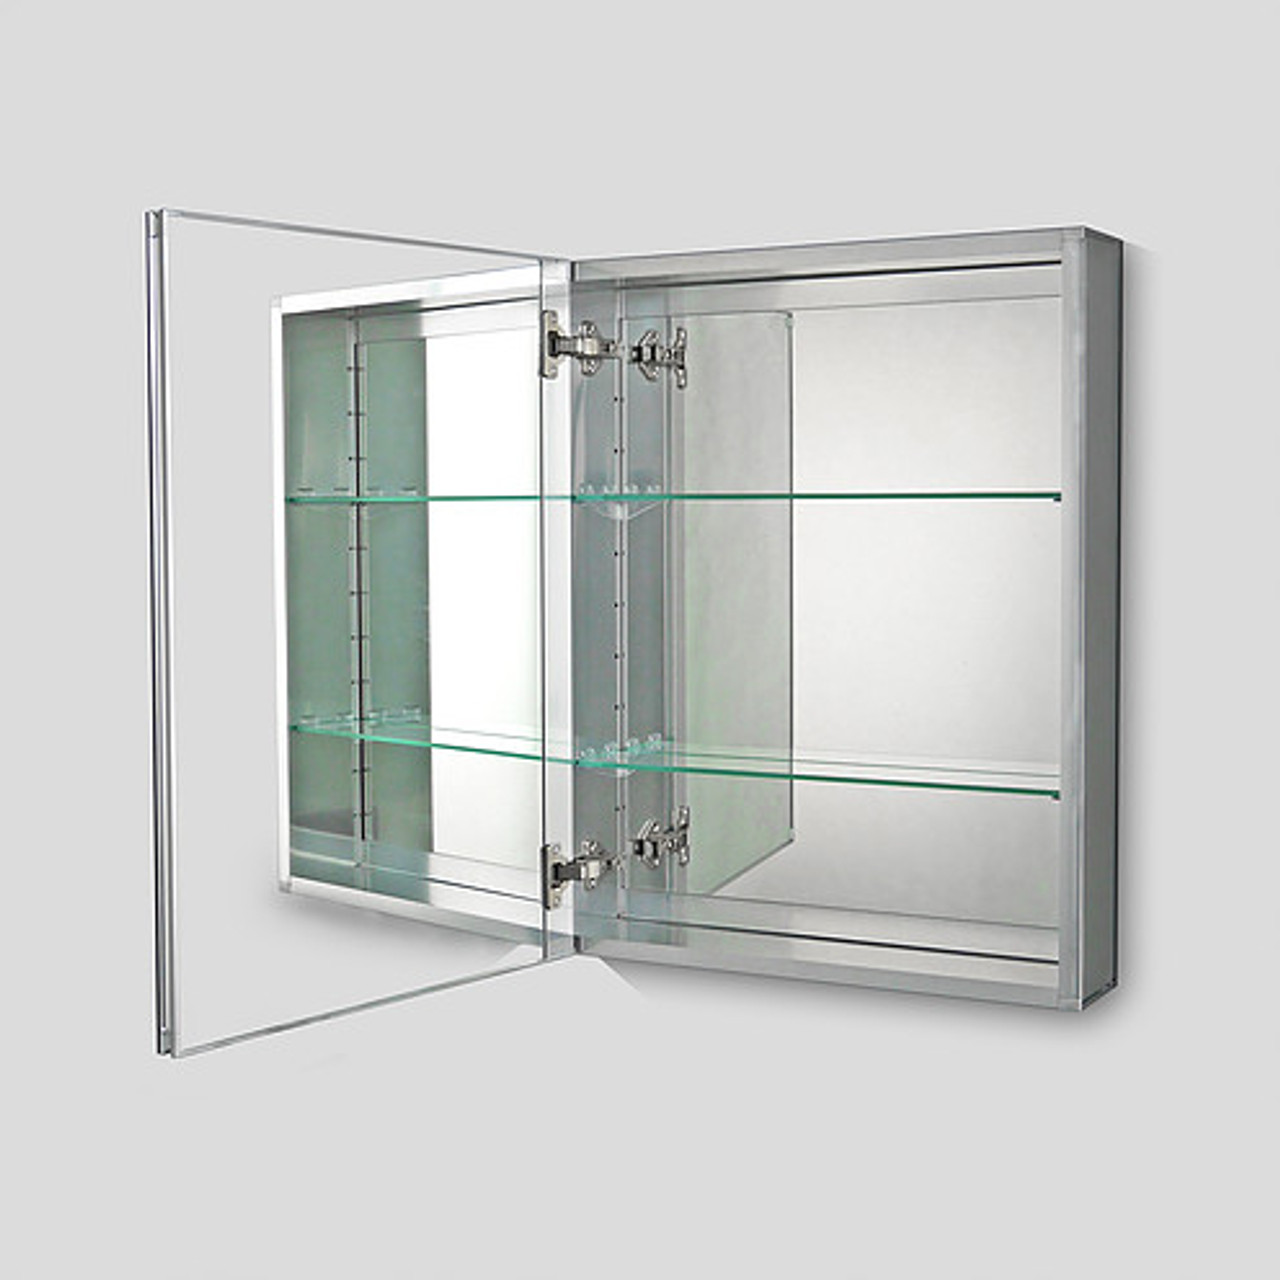 Ketcham single door medicine cabinets Premier Series - Single Door